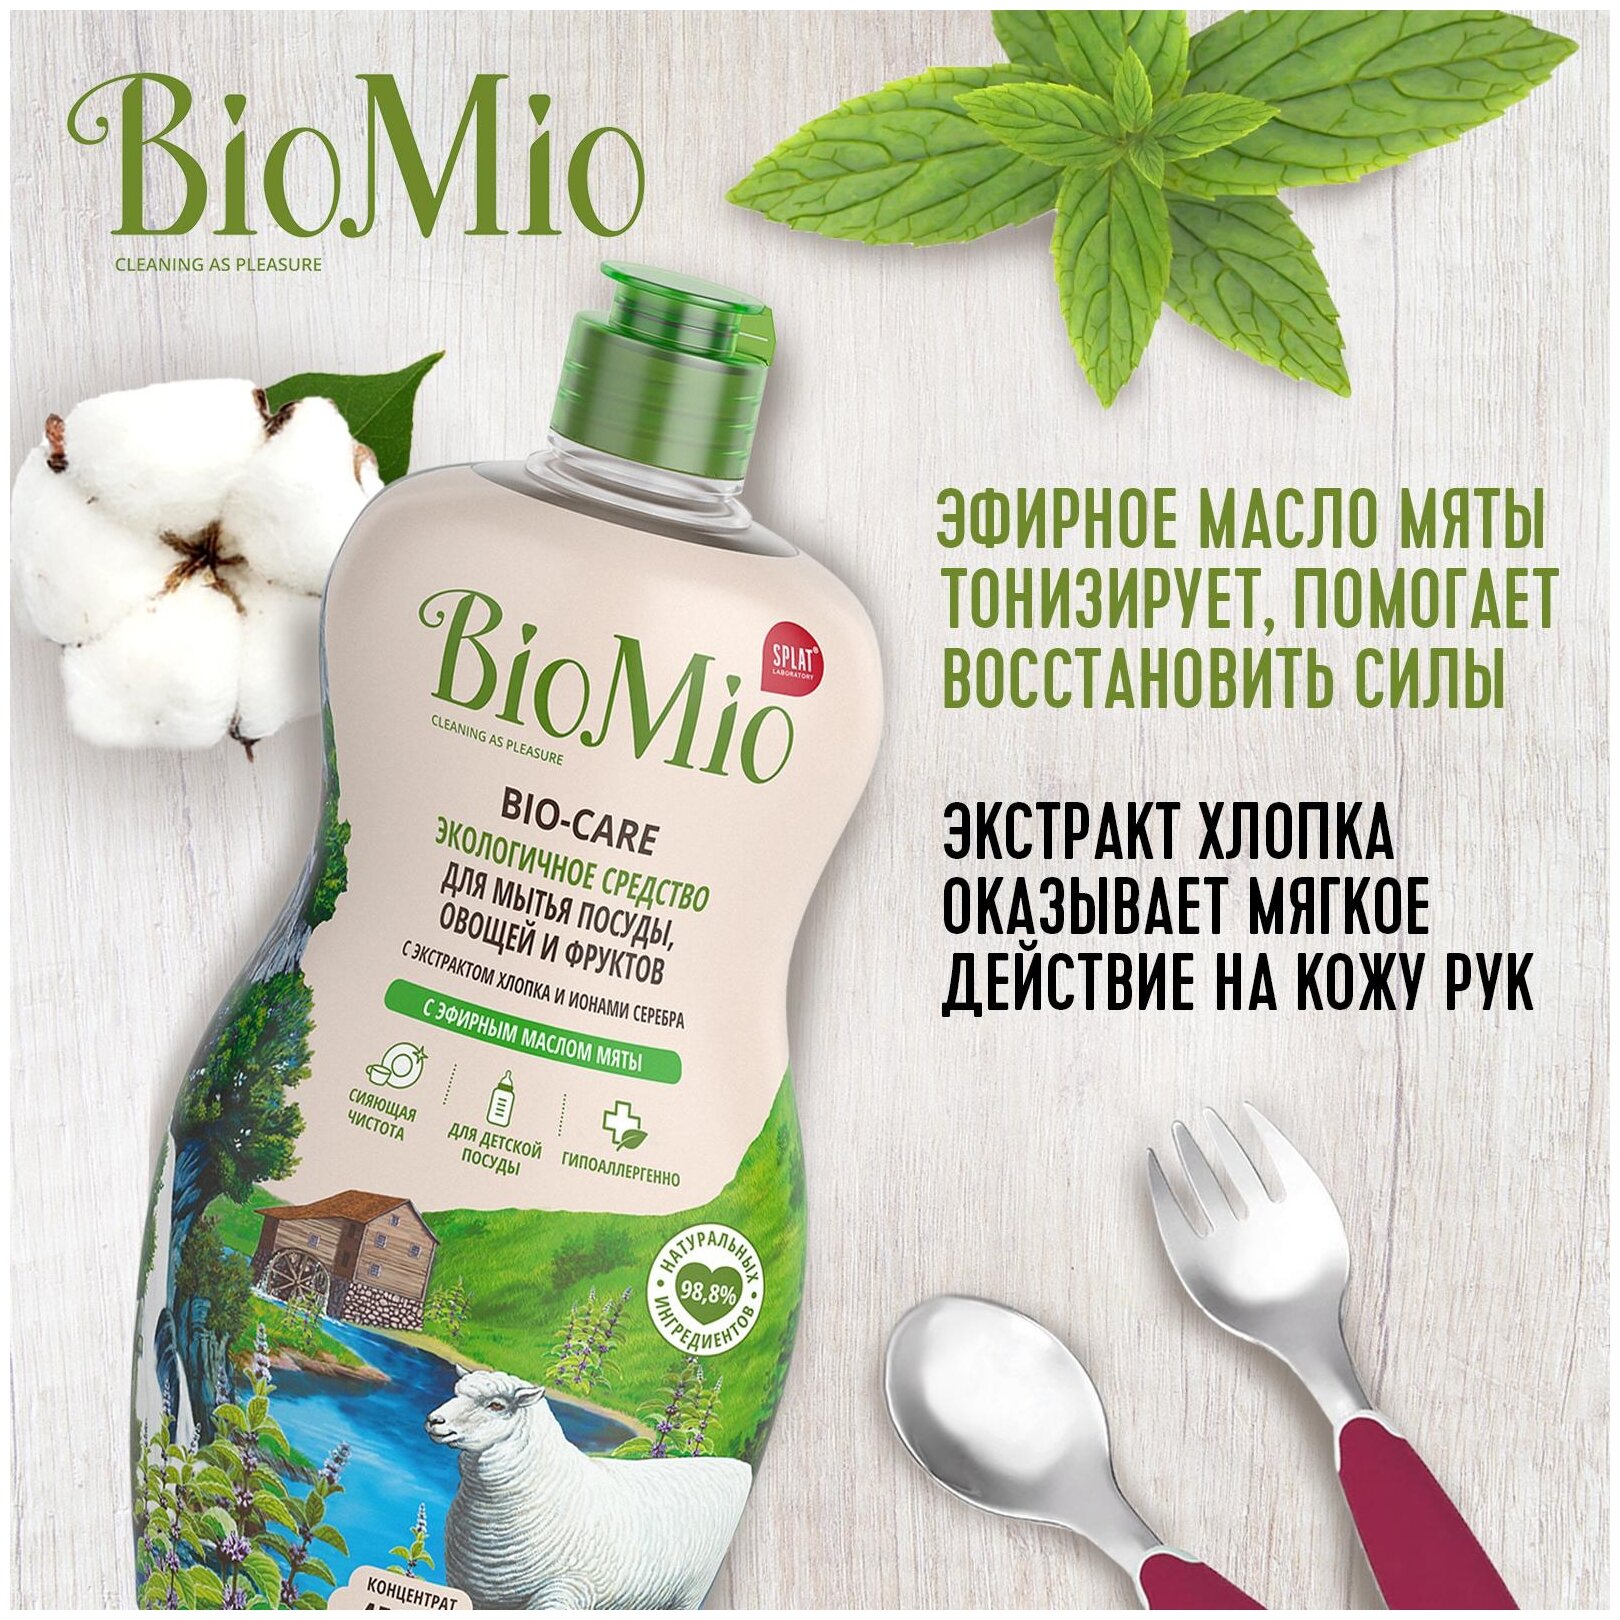 Средство для мытья посуды BioMio с эфирным маслом мяты Bio-care - фото №4